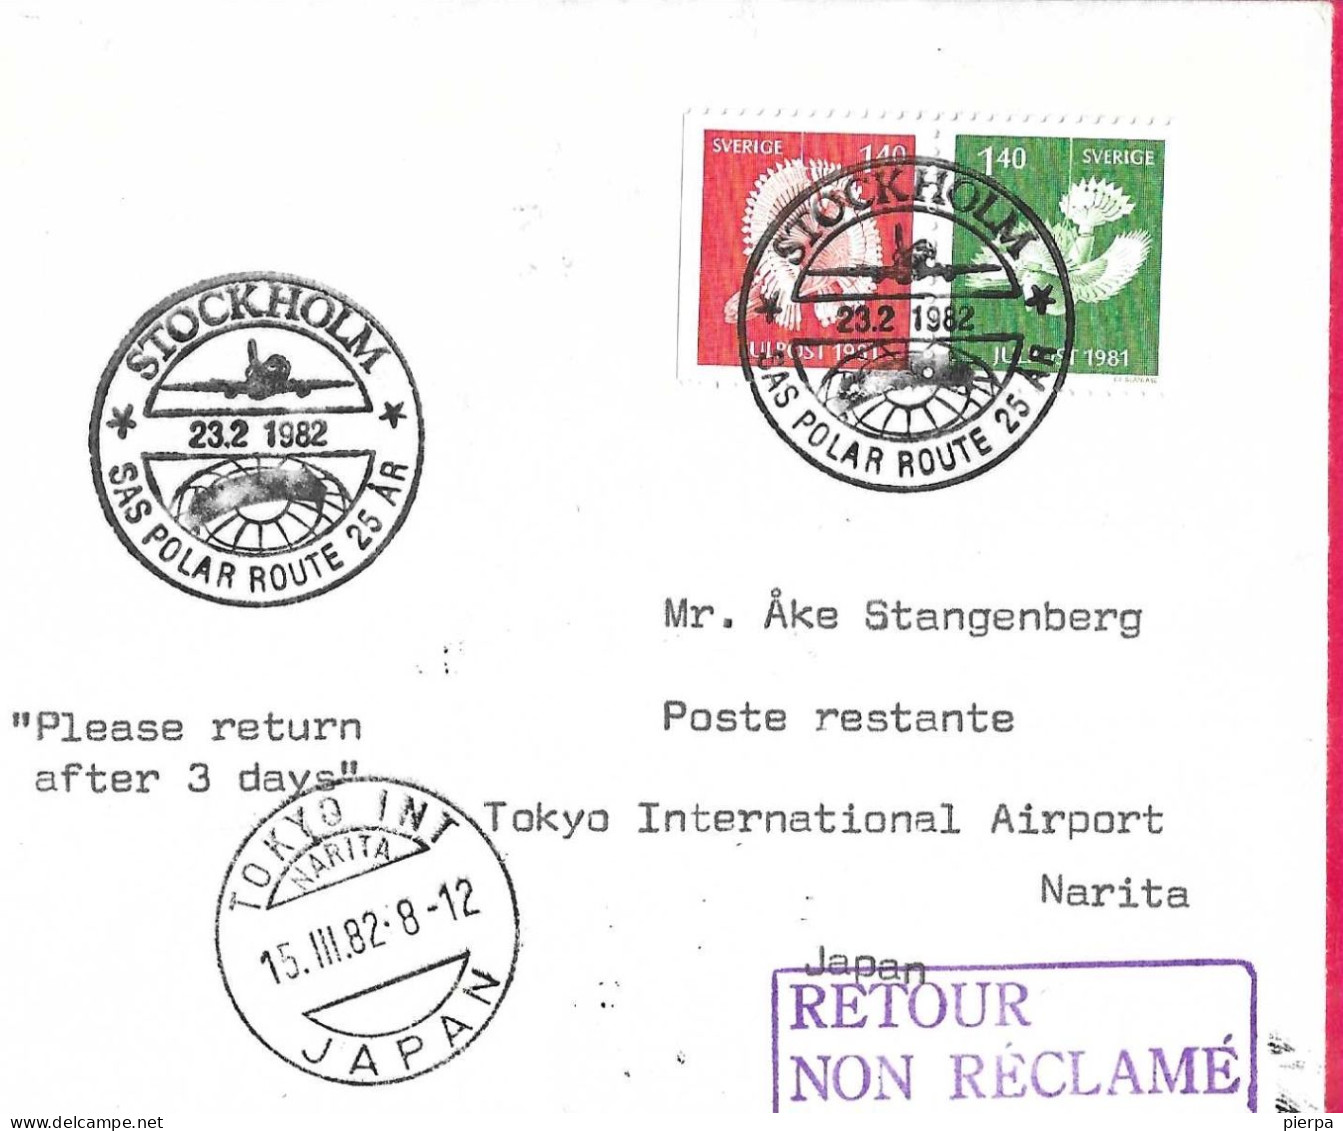 SVERIGE - SAS POLAR ROUTE 25 AR - FROM STOCKHOLM TO TOKYO * 23.2.1982* ON COVER - Briefe U. Dokumente